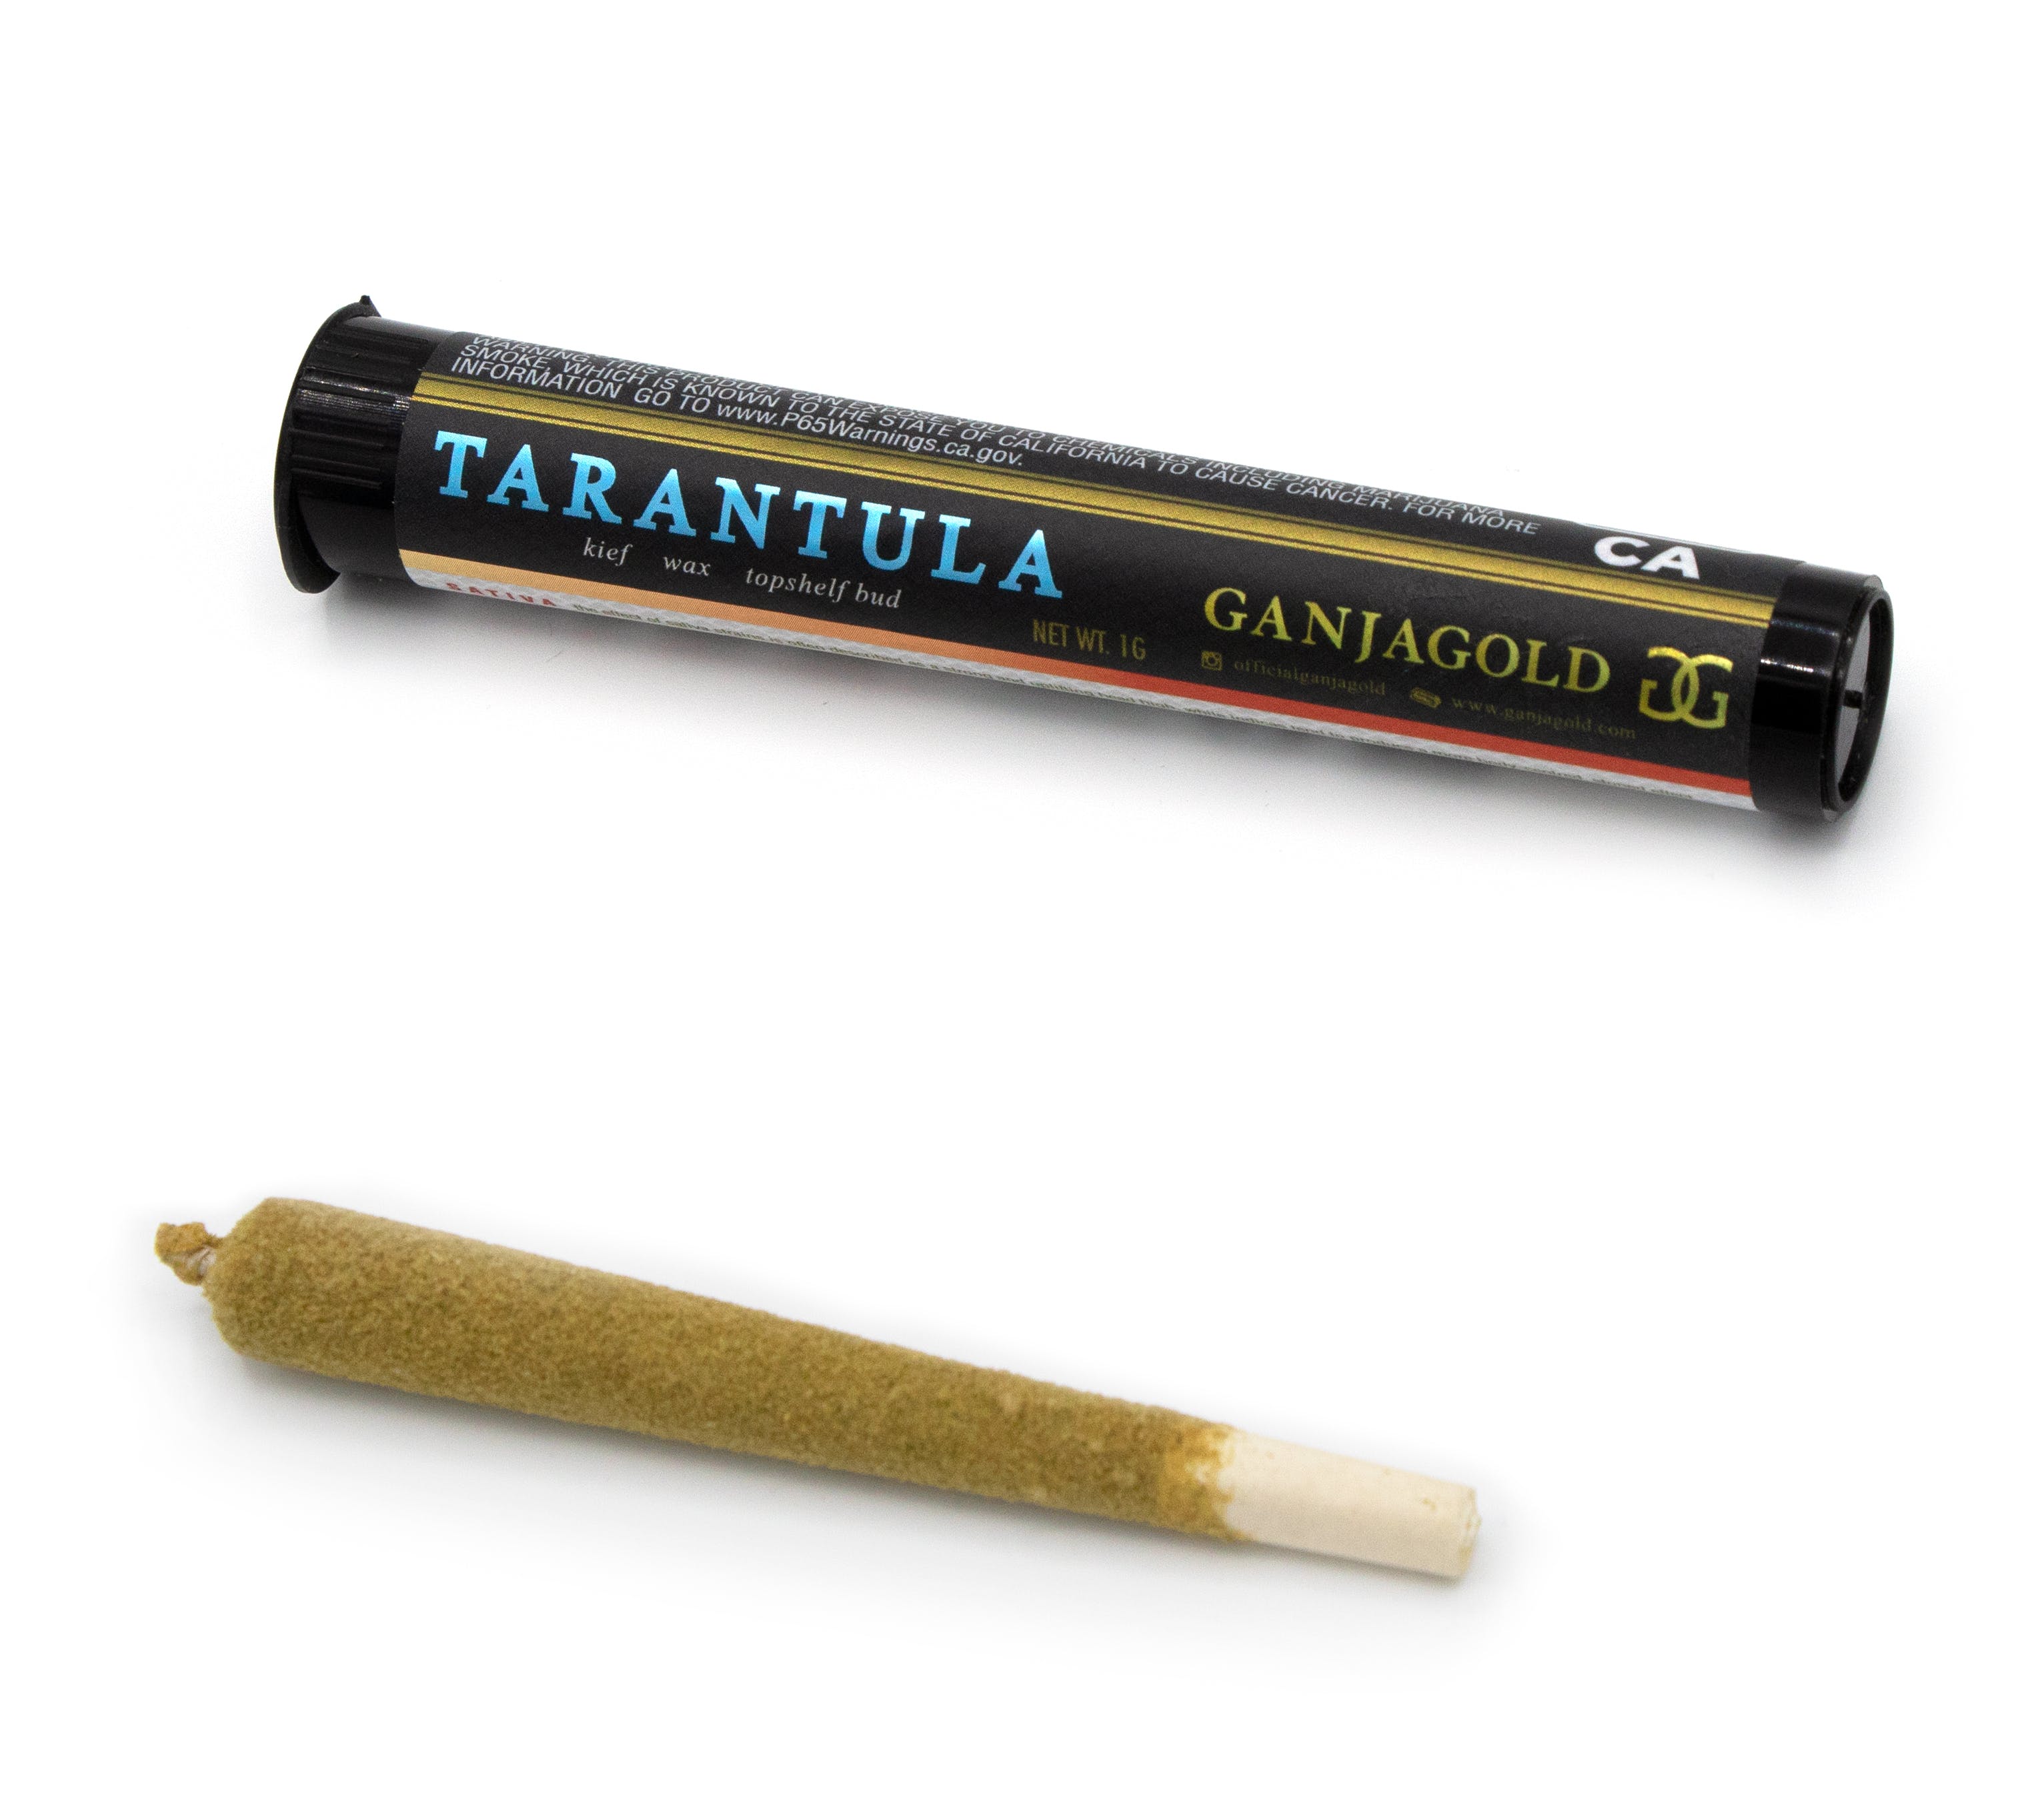 marijuana-dispensaries-davis-cannabis-collective-in-davis-ganja-gold-blue-tarantula